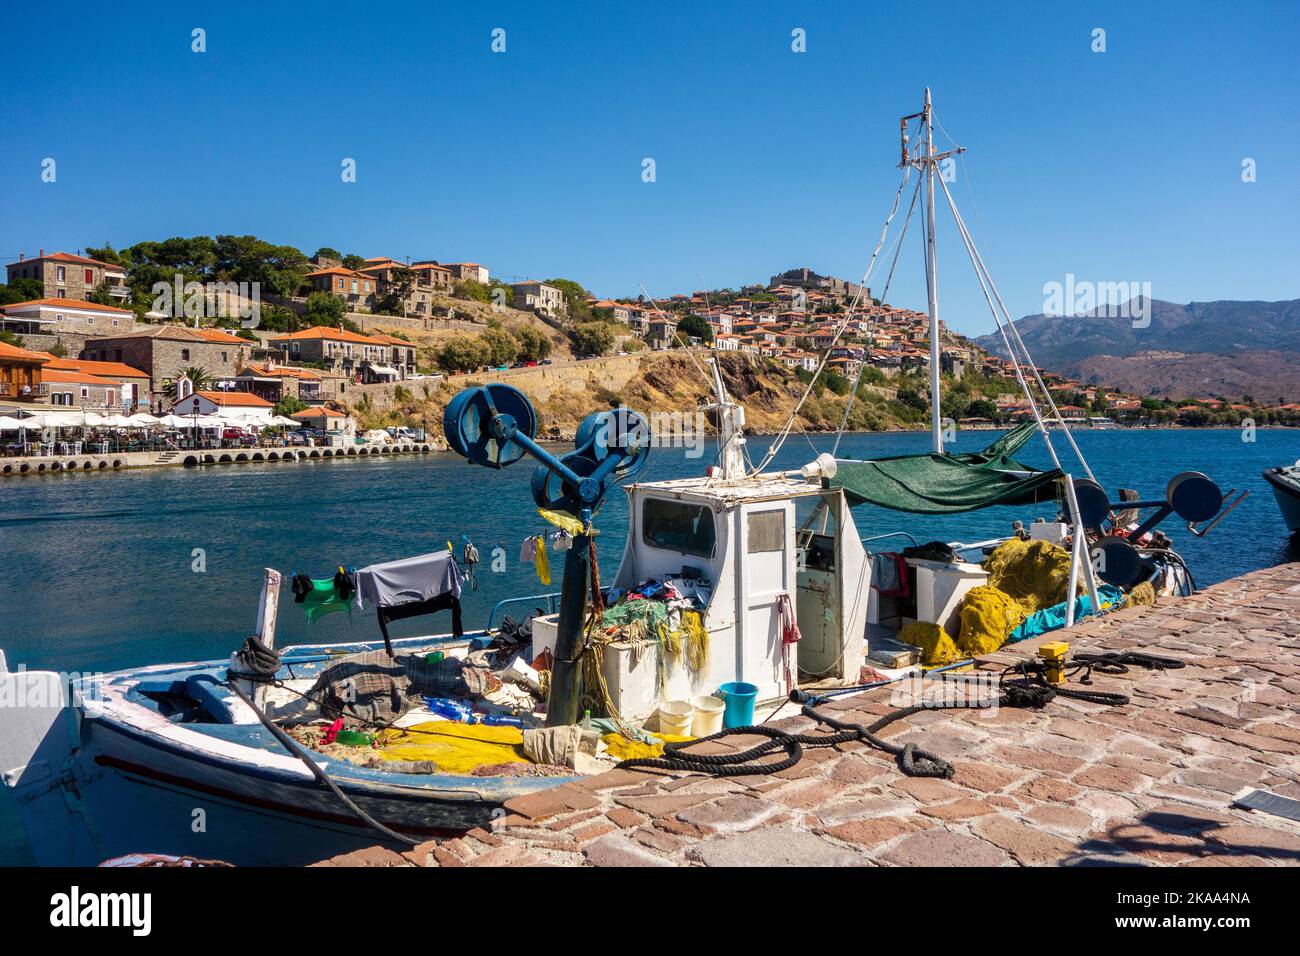 Bateau de pêche dans le port à la station de vacances de Molyvos sur l'île grecque de Lesvos Grèce Banque D'Images